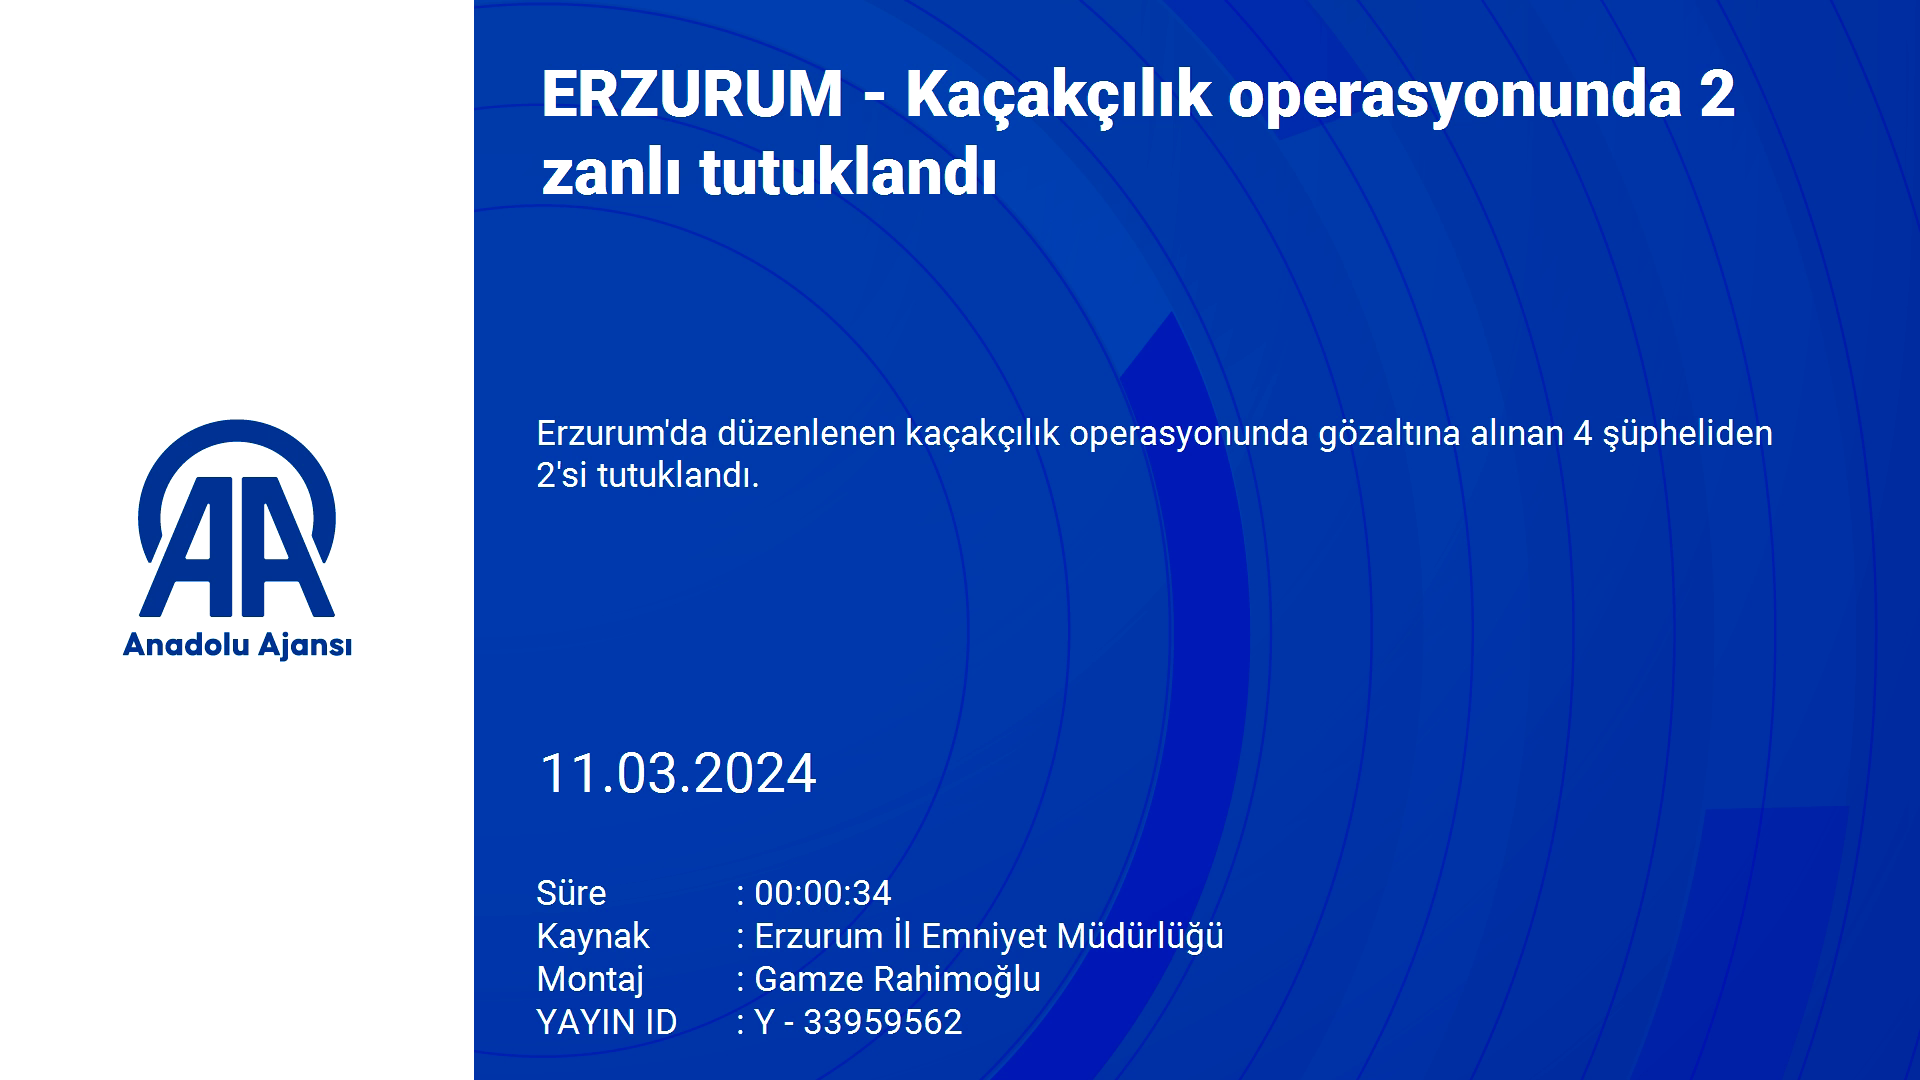 ERZURUM - Kaçakçılık operasyonunda 2 zanlı tutuklandı